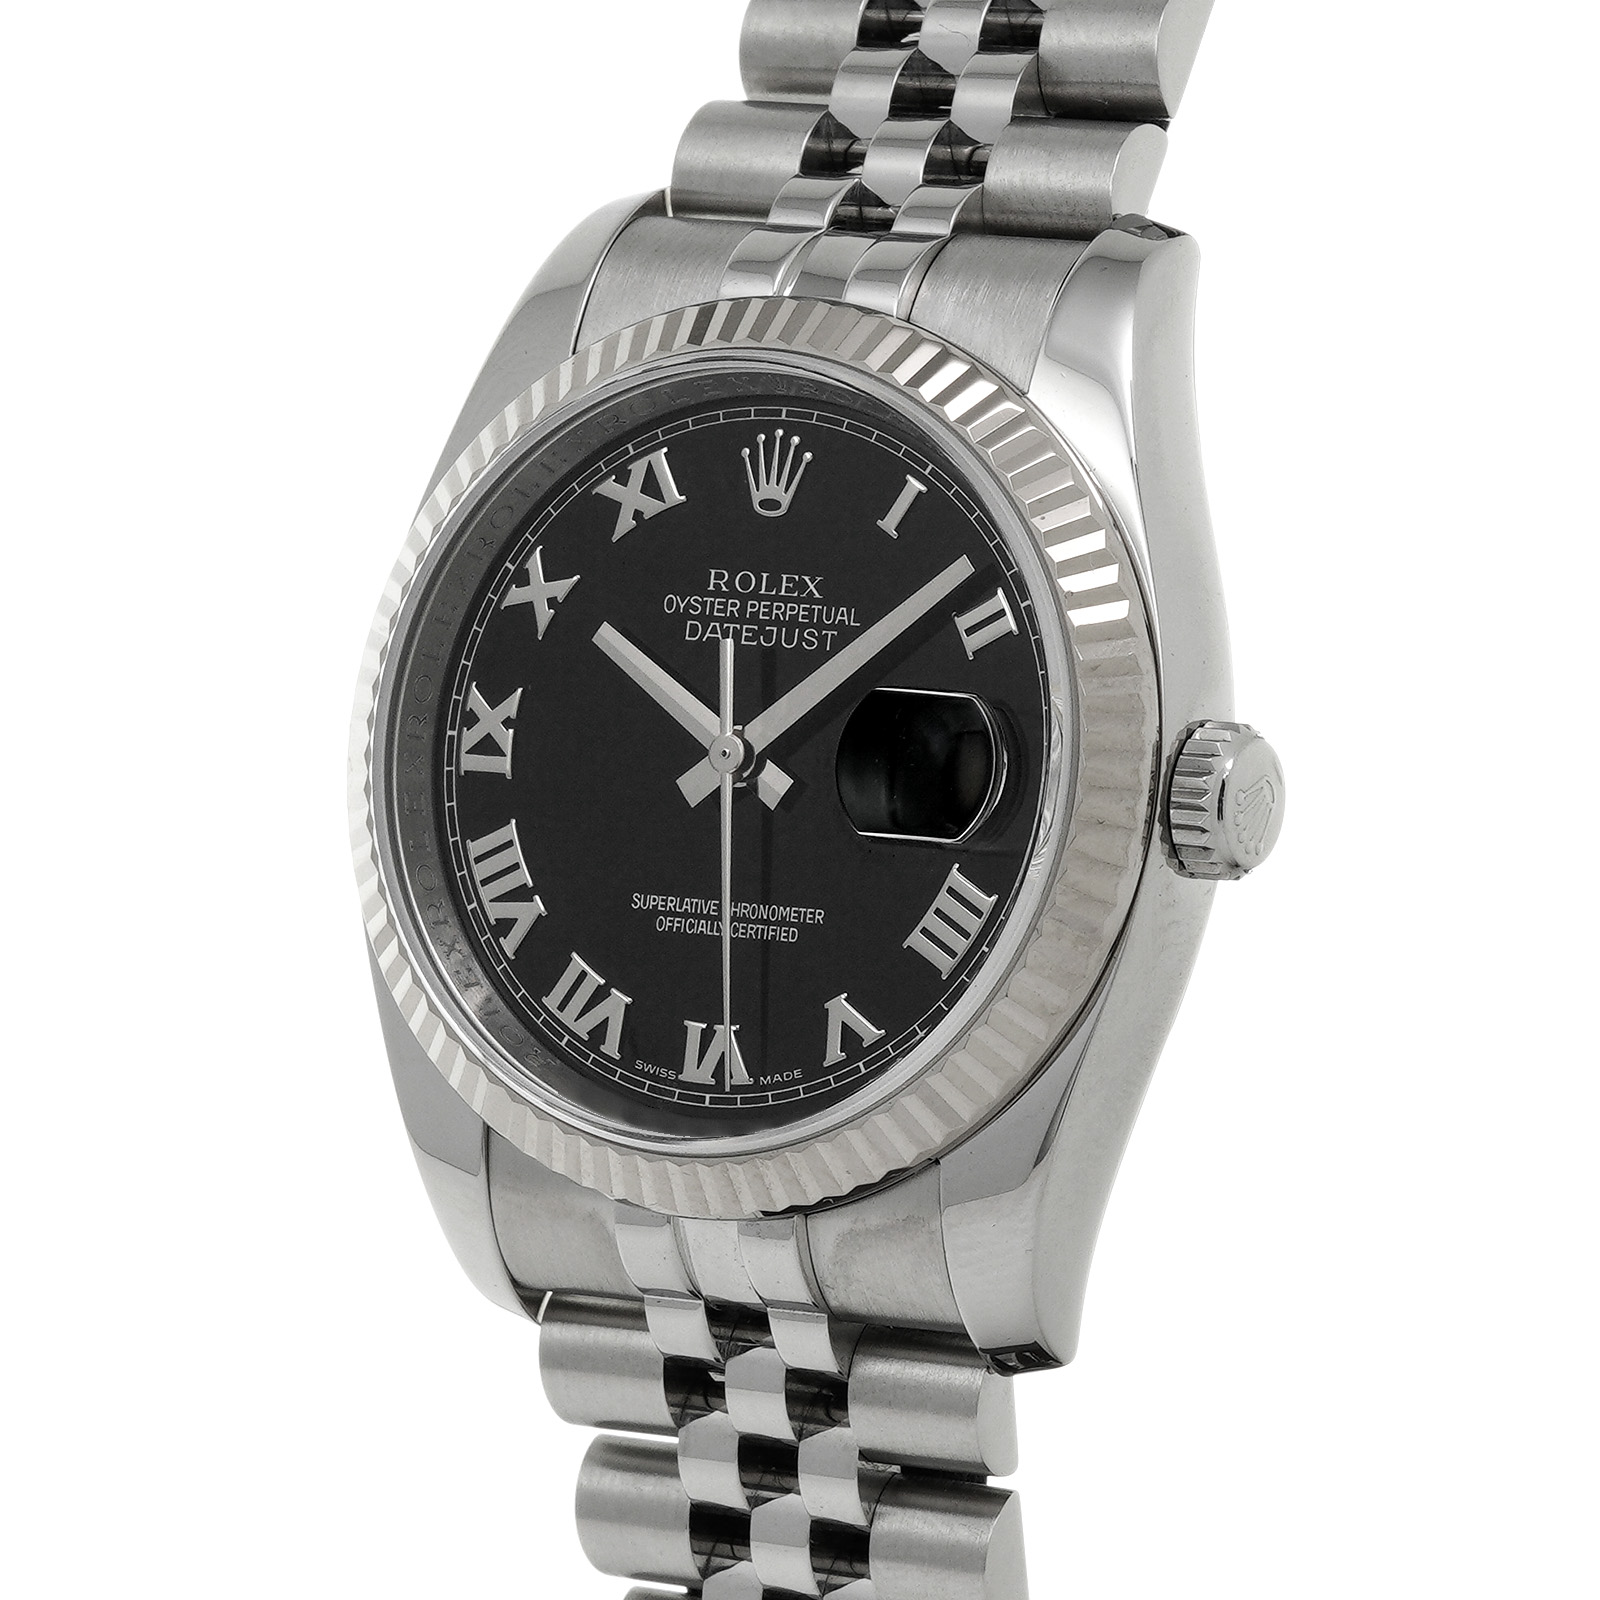 ロレックス ROLEX 116234 G番(2010年頃製造) ブラック メンズ 腕時計